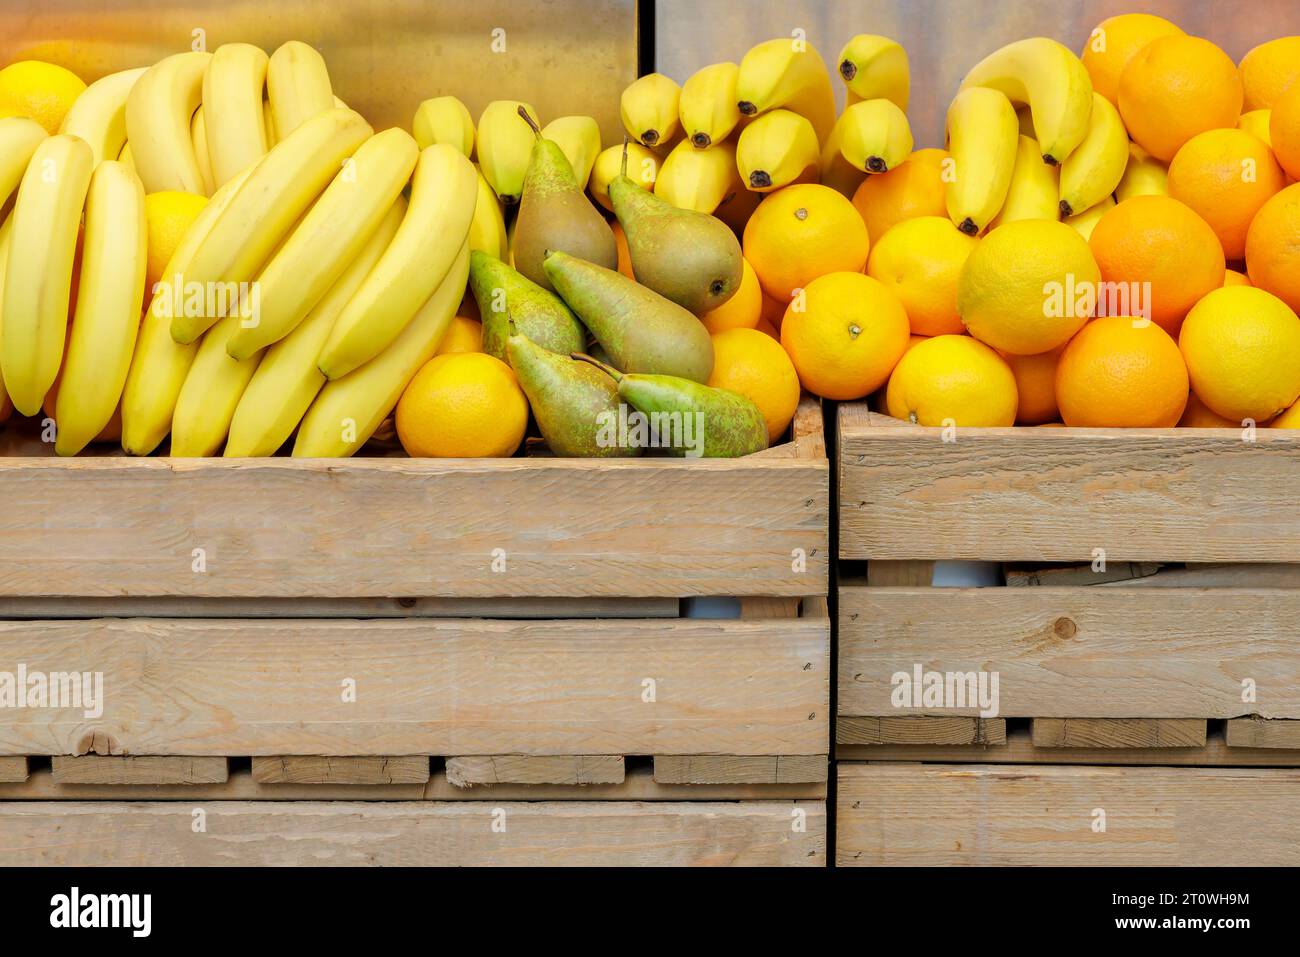 Marktstand mit frischen Bananen, Birnen und Orangen in Holzkisten Stockfoto